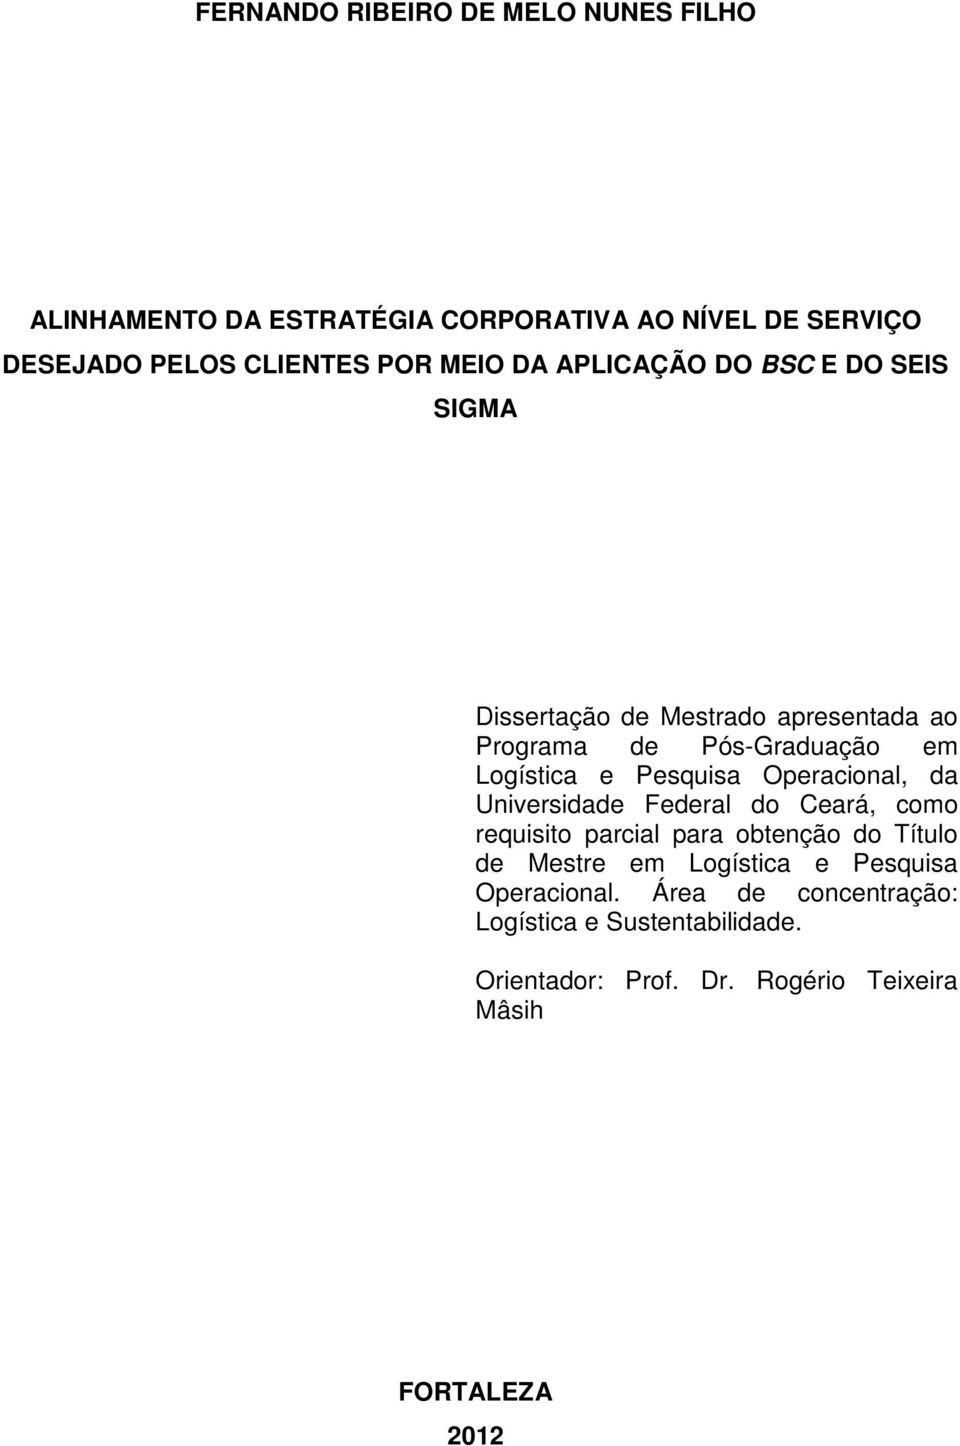 Pesquisa Operacional, da Universidade Federal do Ceará, como requisito parcial para obtenção do Título de Mestre em Logística